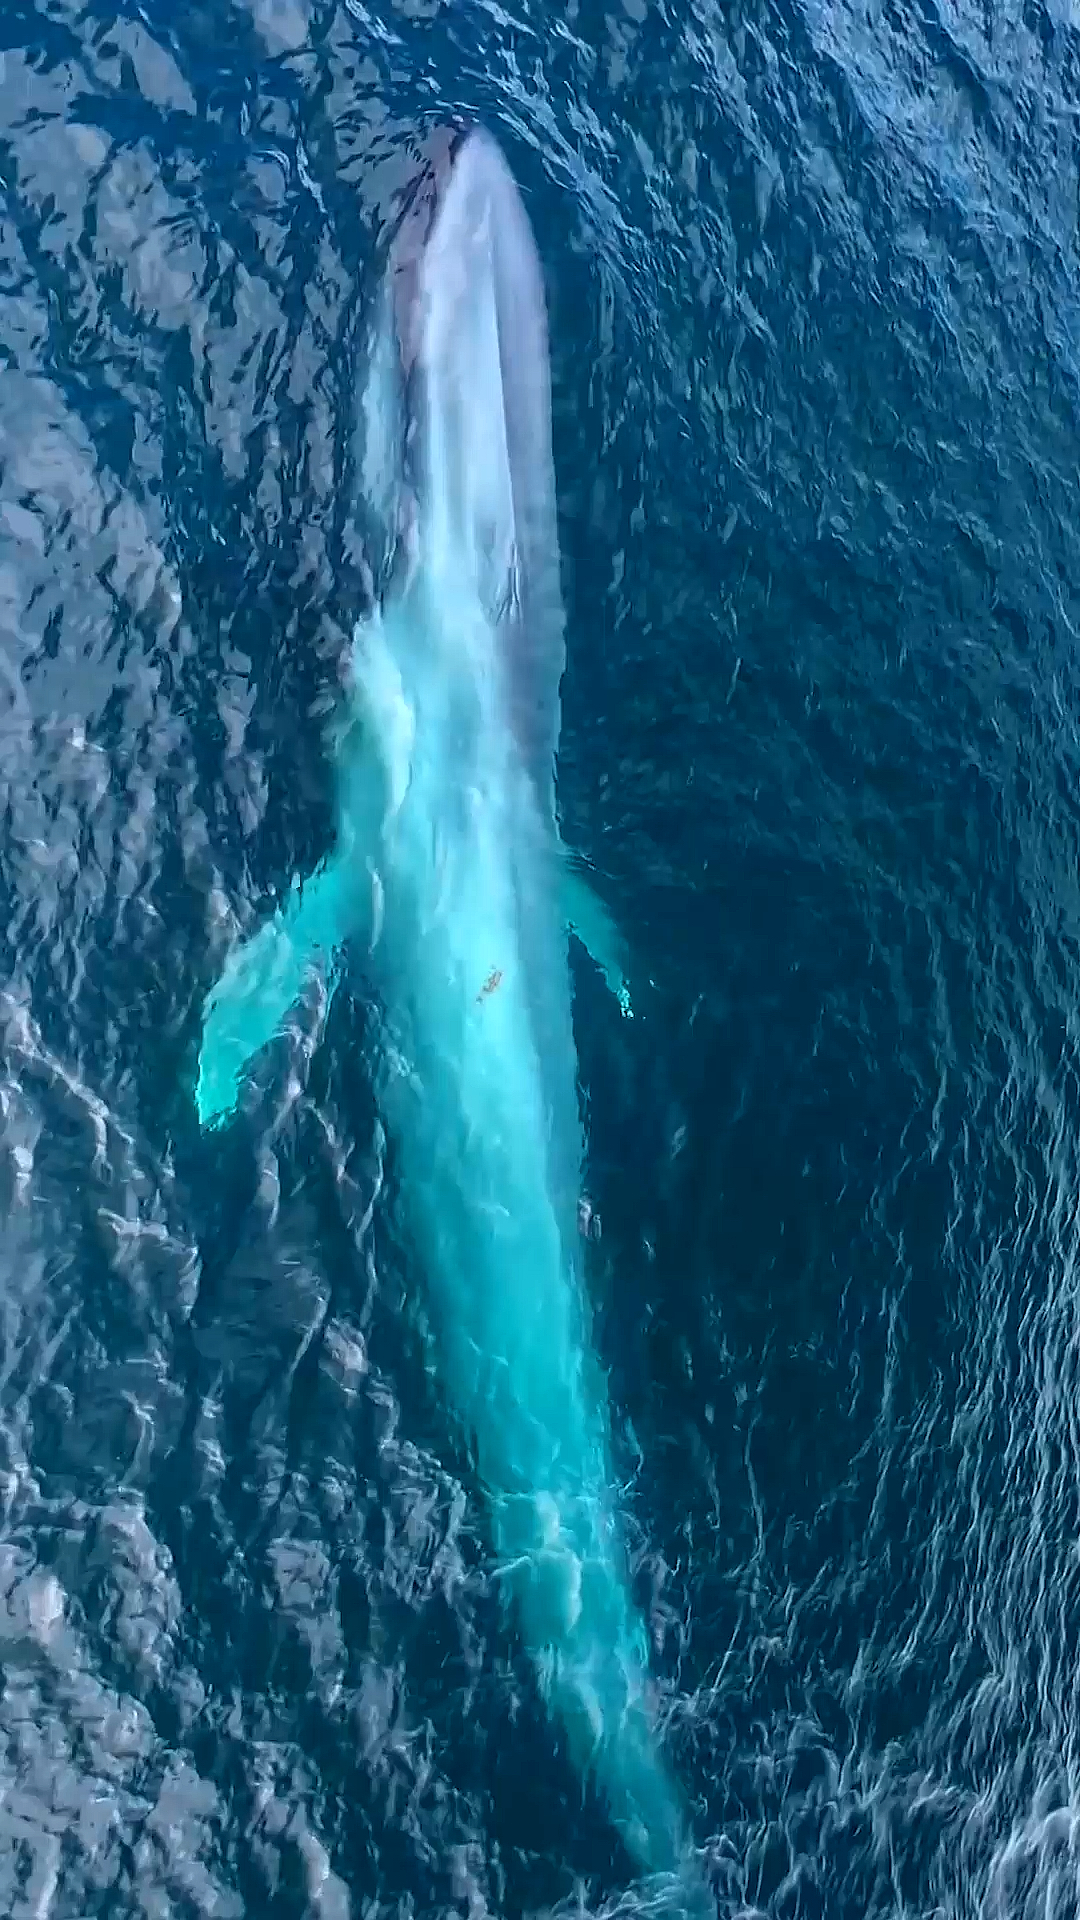 深海蓝鲸 唯美图片